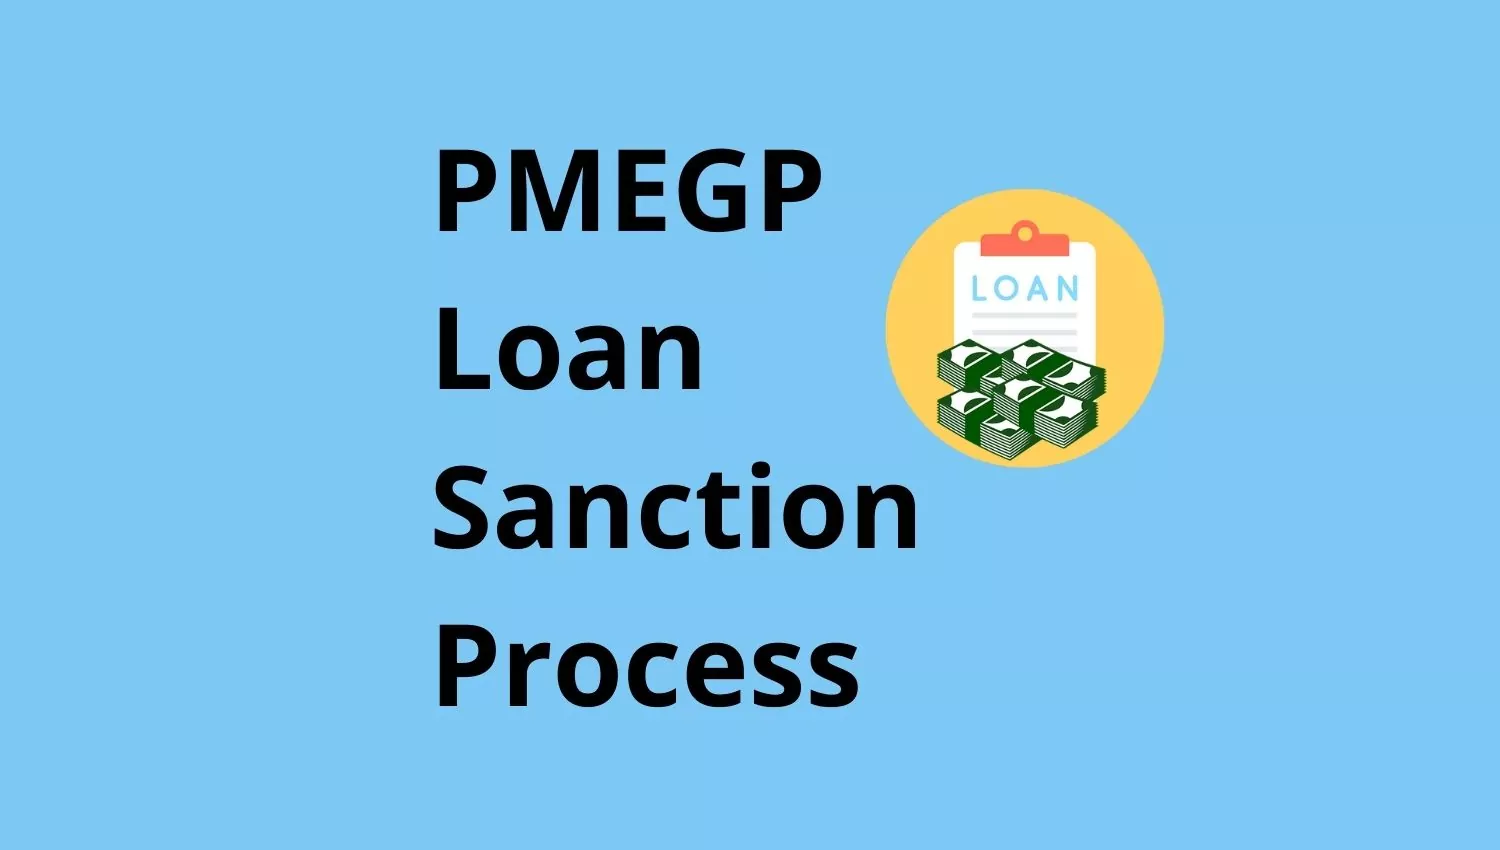 PMEGP Loan Sanction Process